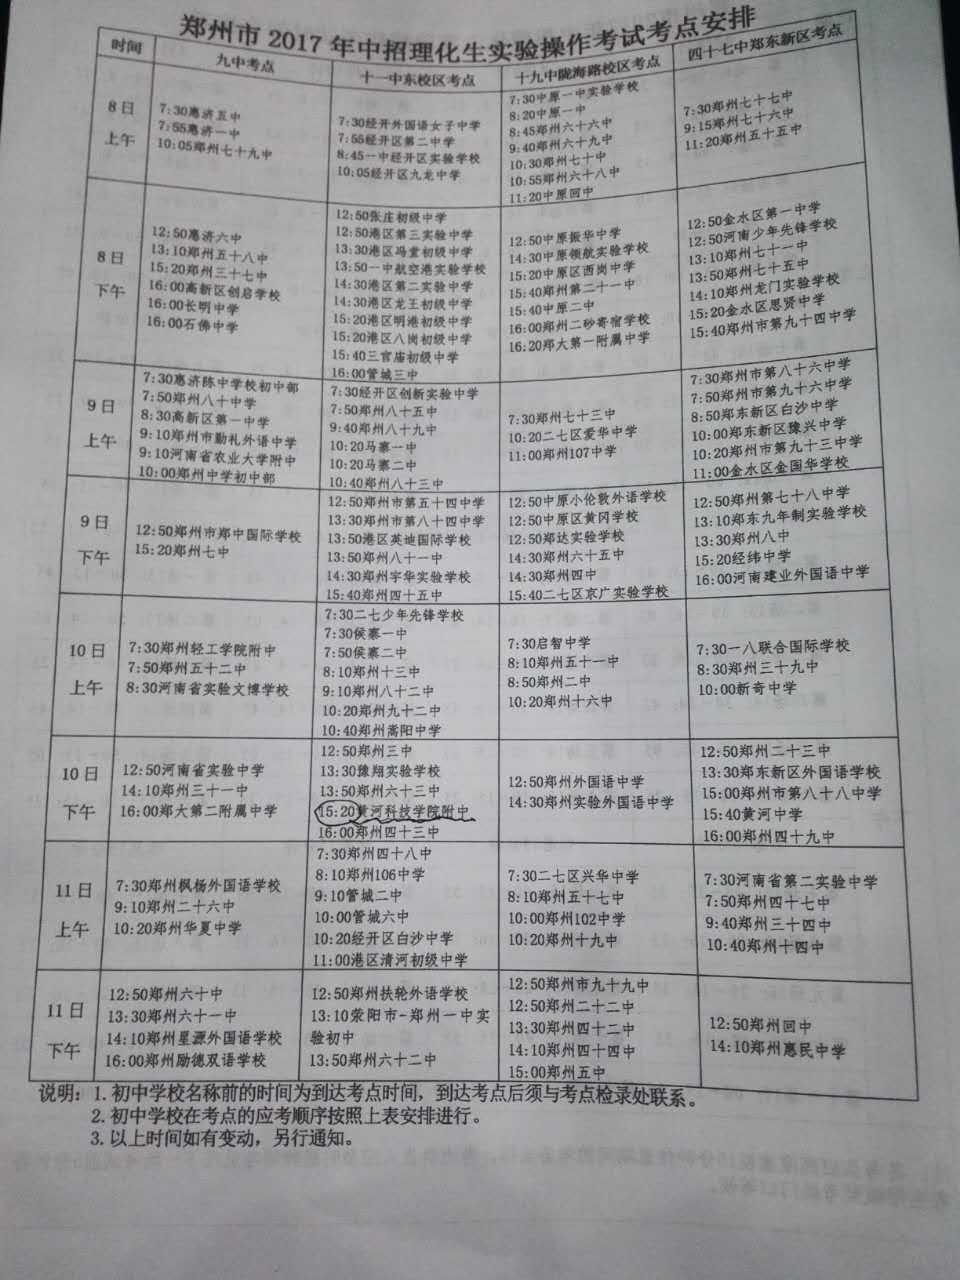 郑州市17年中招理化生实验操作考试考点安排1